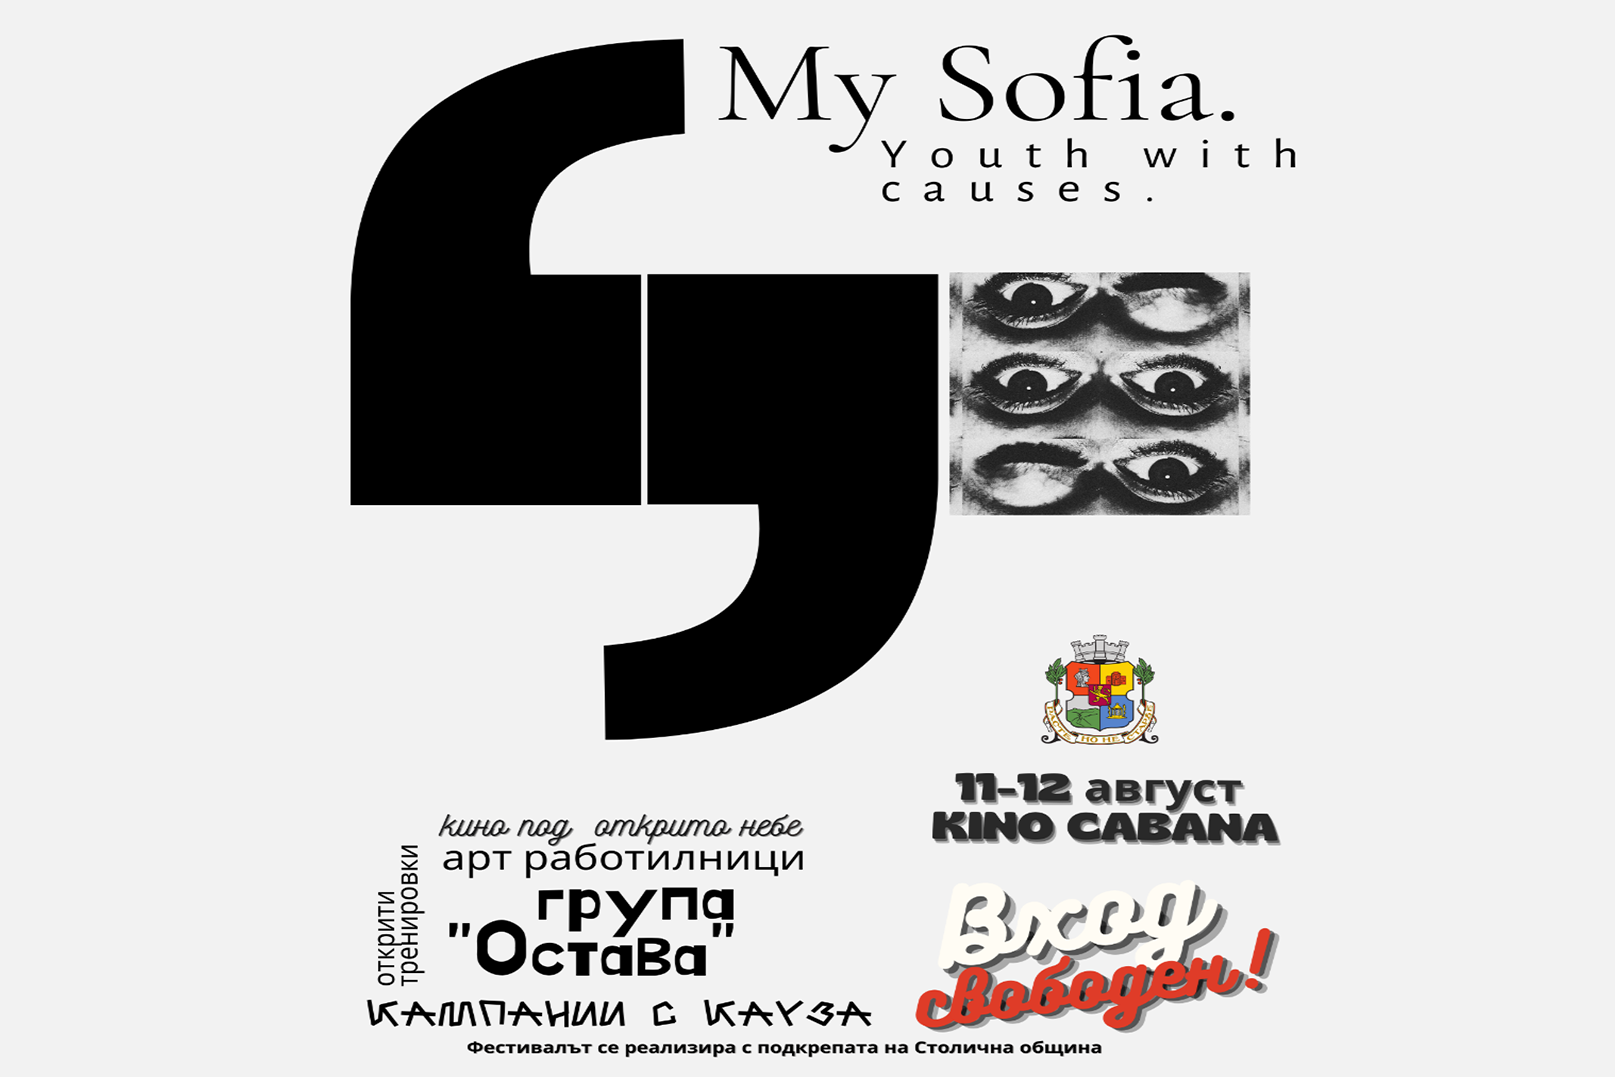 На 11 и 12 август София се превръща в град на младите и активните, с музика, кино под открито небе и кампании с каузи.